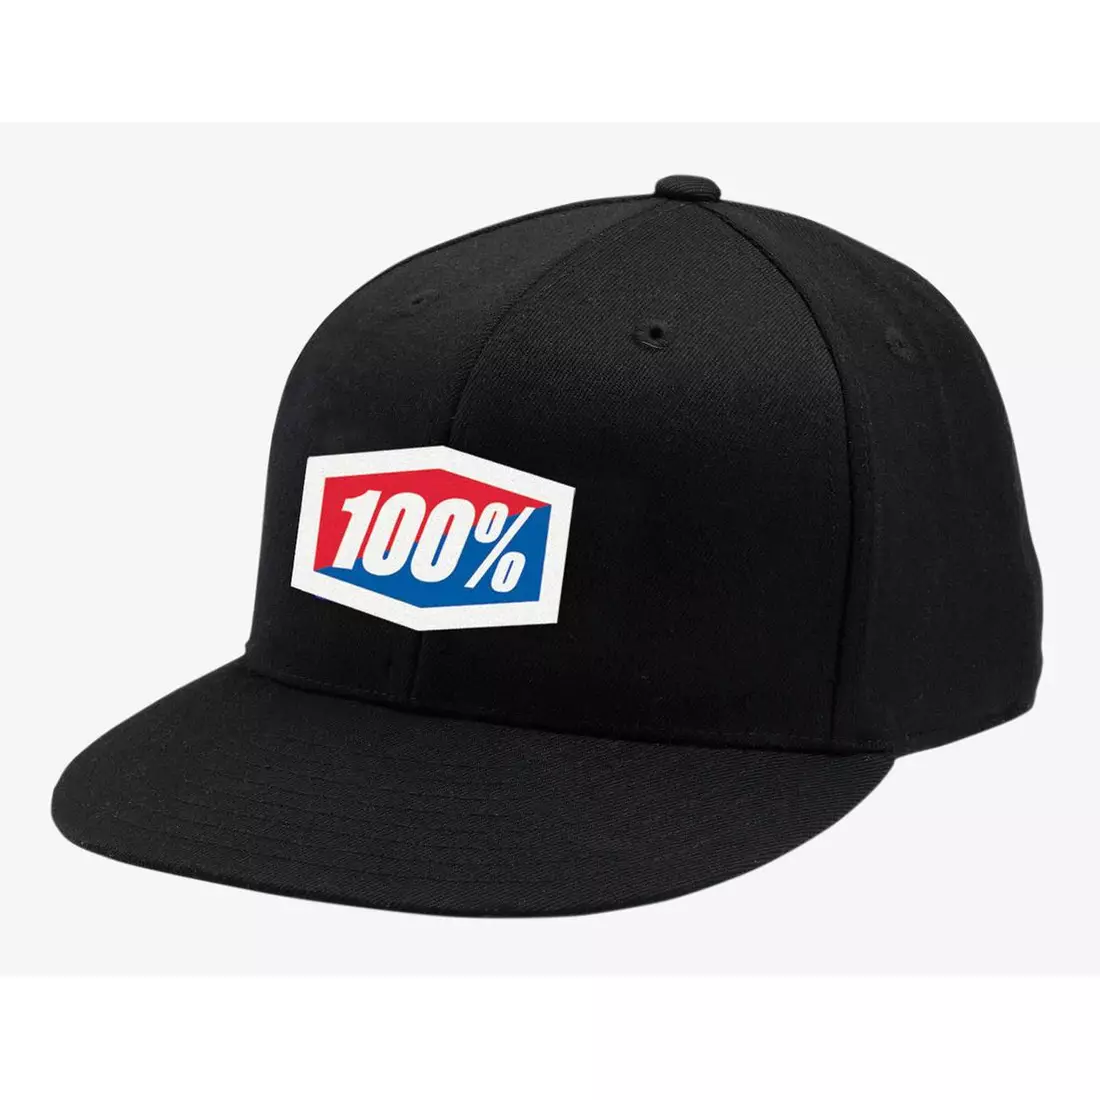 100% czapka z daszkiem official J-Fit flexfit hat black STO-20040-001-17